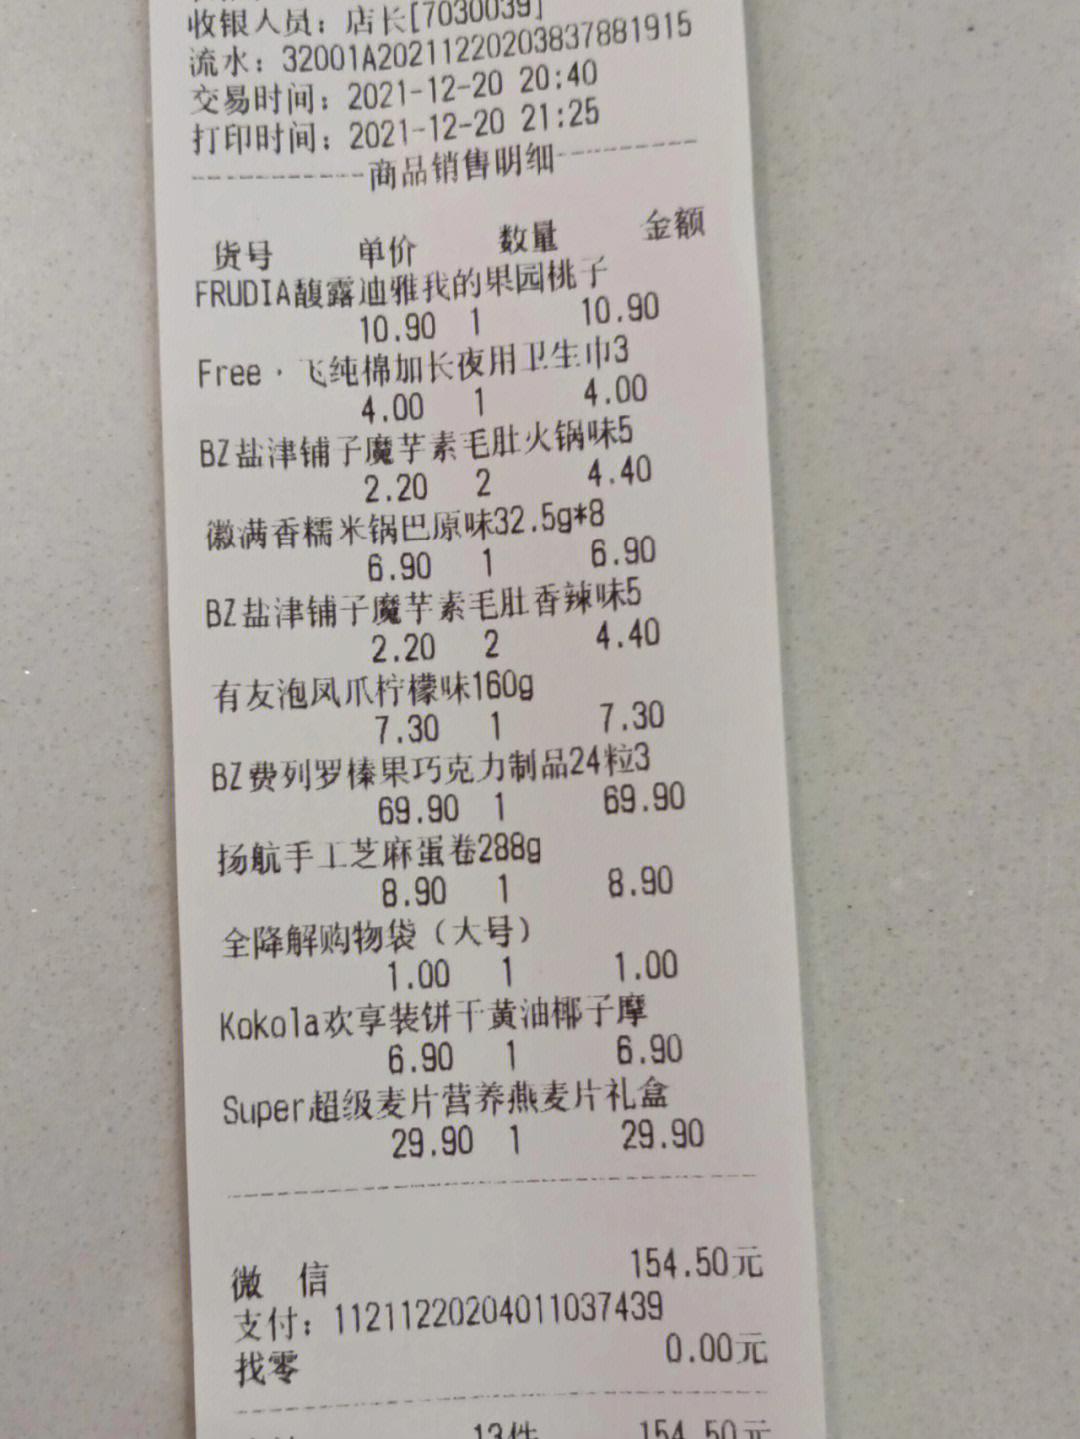 南京人都爱逛的折扣零食超市盒马楼上